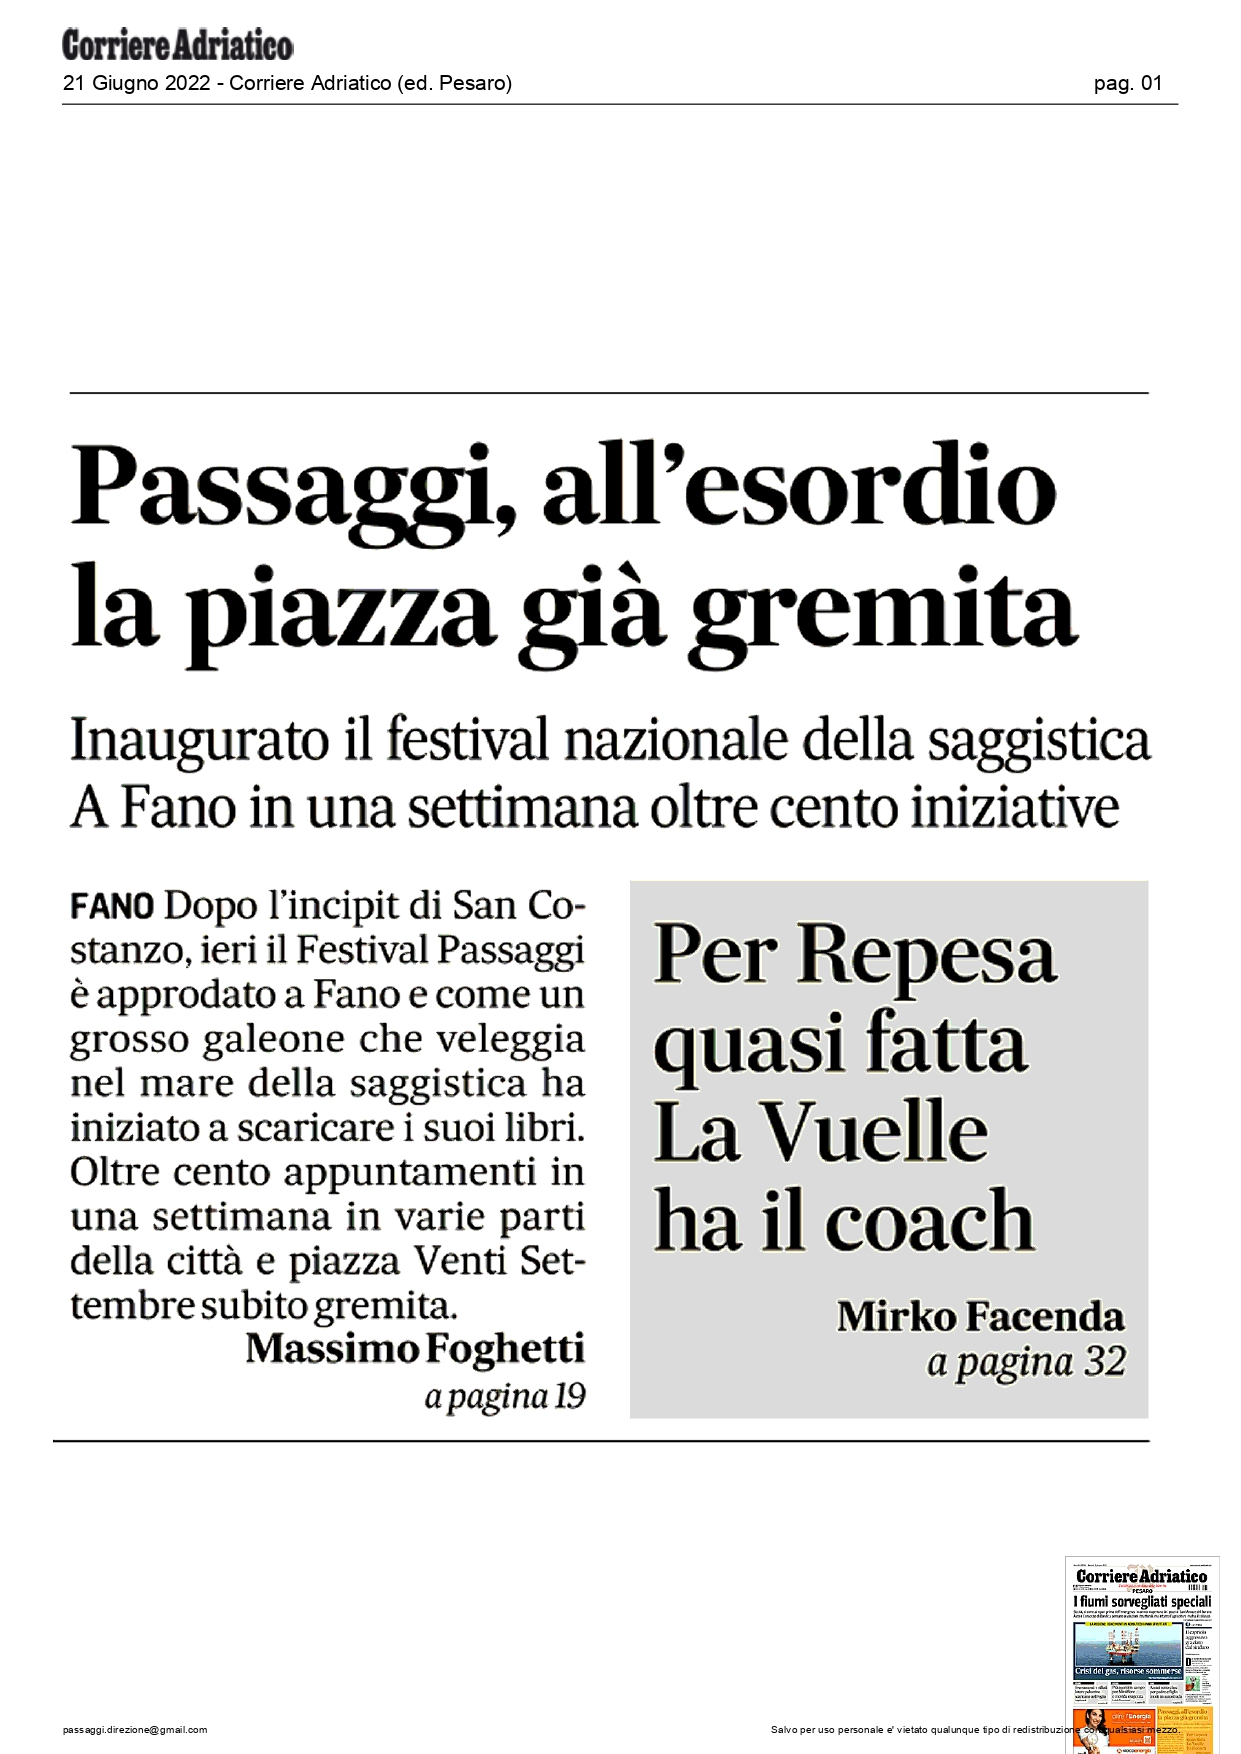 Corriere-Adriatico-ed.-Pesaro-Passaggi-all-esordio-la-piazza-gia-gremita